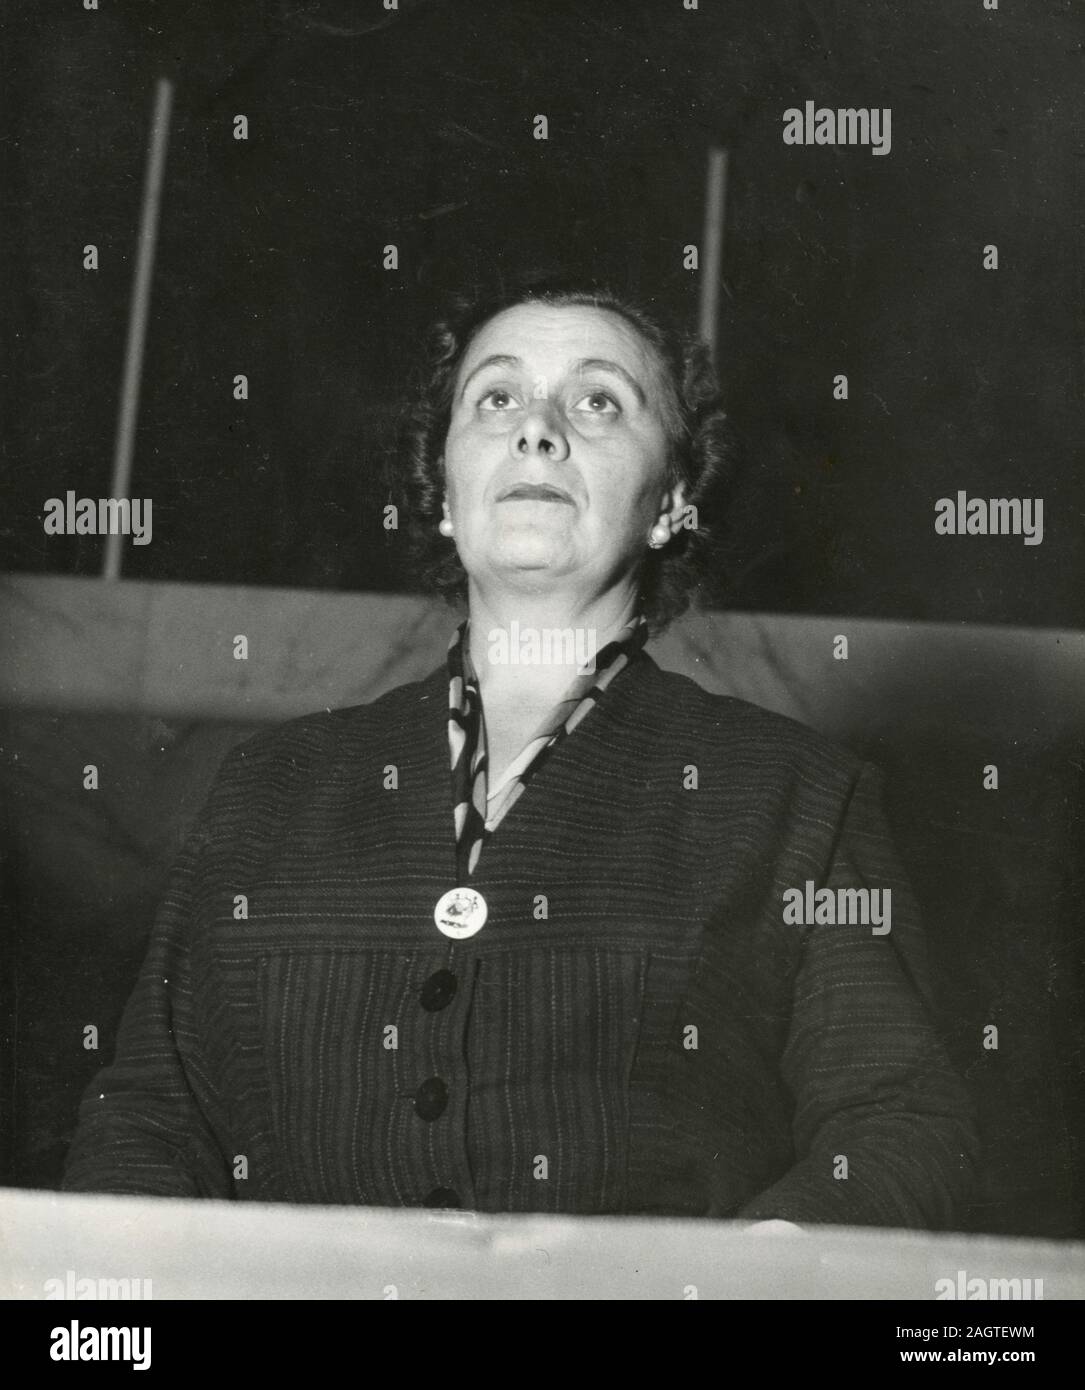 Unidentified donna italiana politico del Pci partito comunista, 1960s Foto Stock